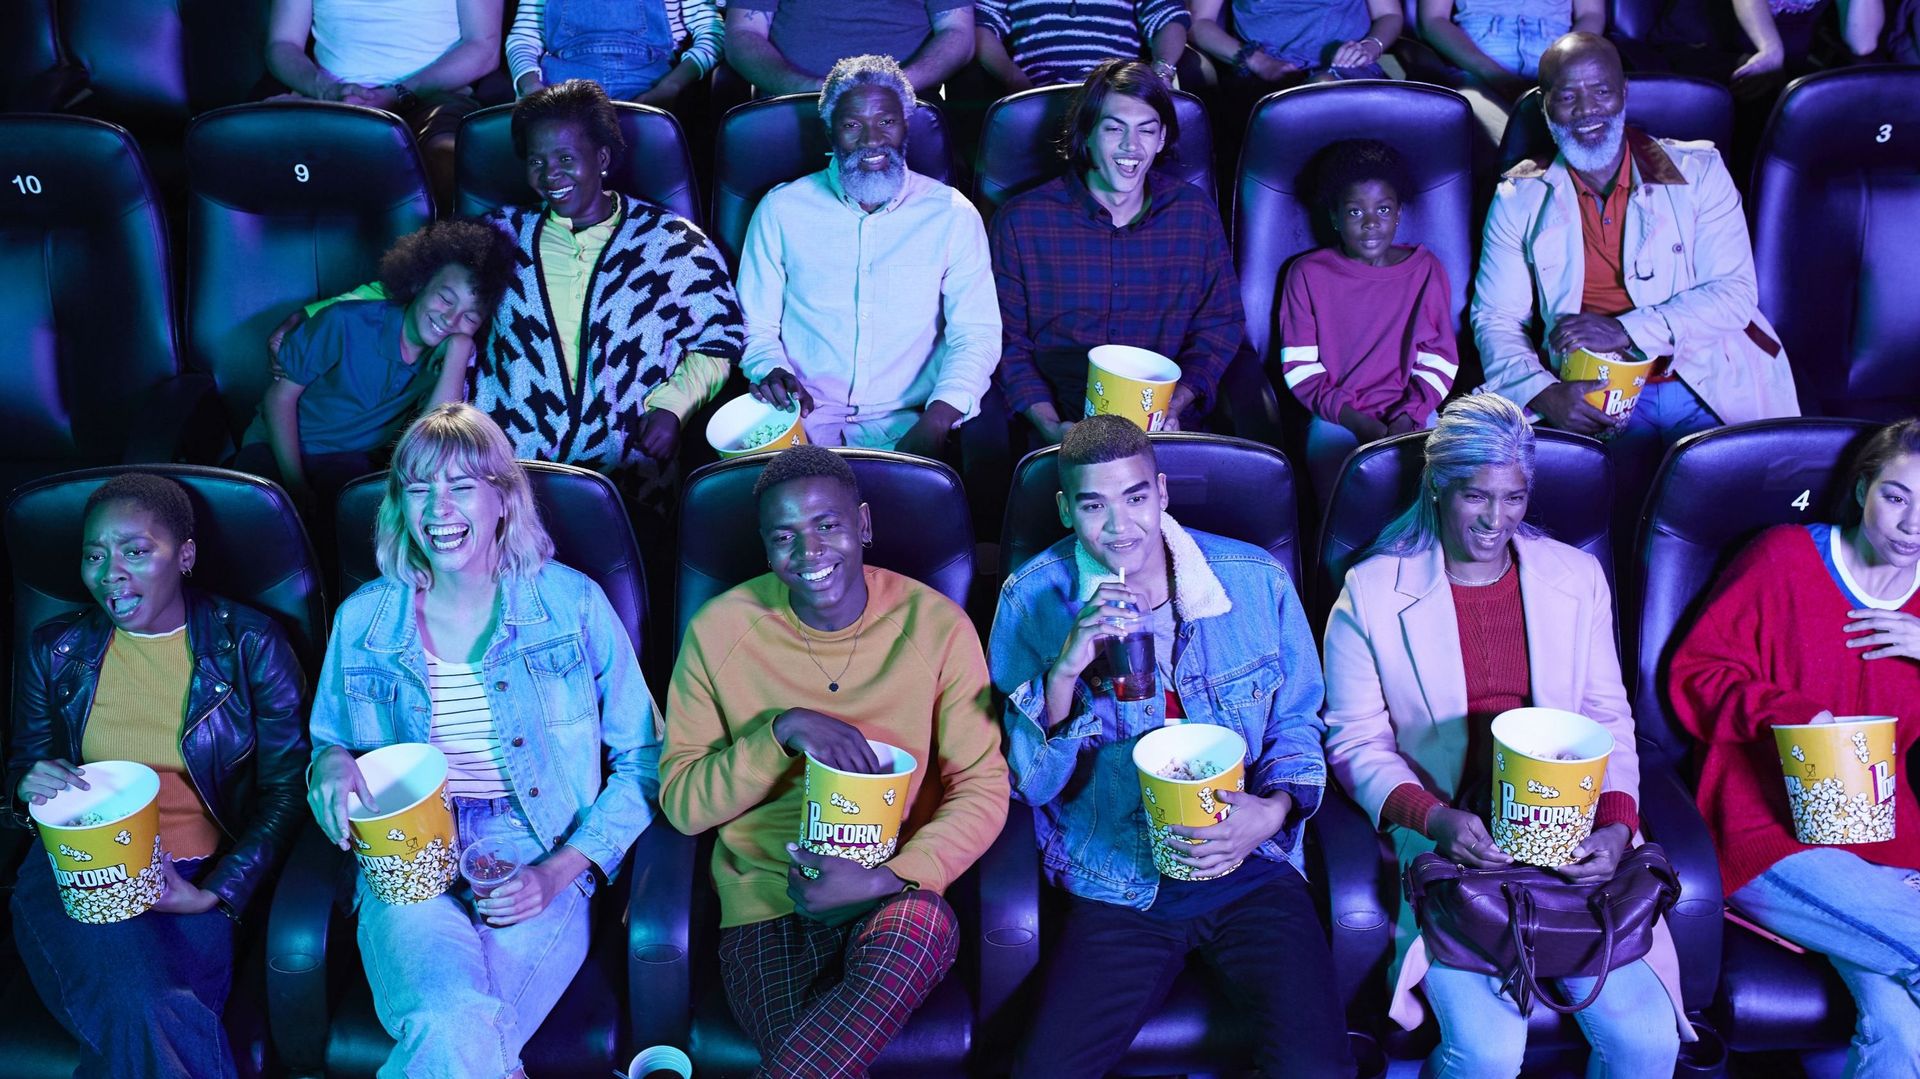 Spectateurs dans une salle de cinéma mangeant du pop-corn.